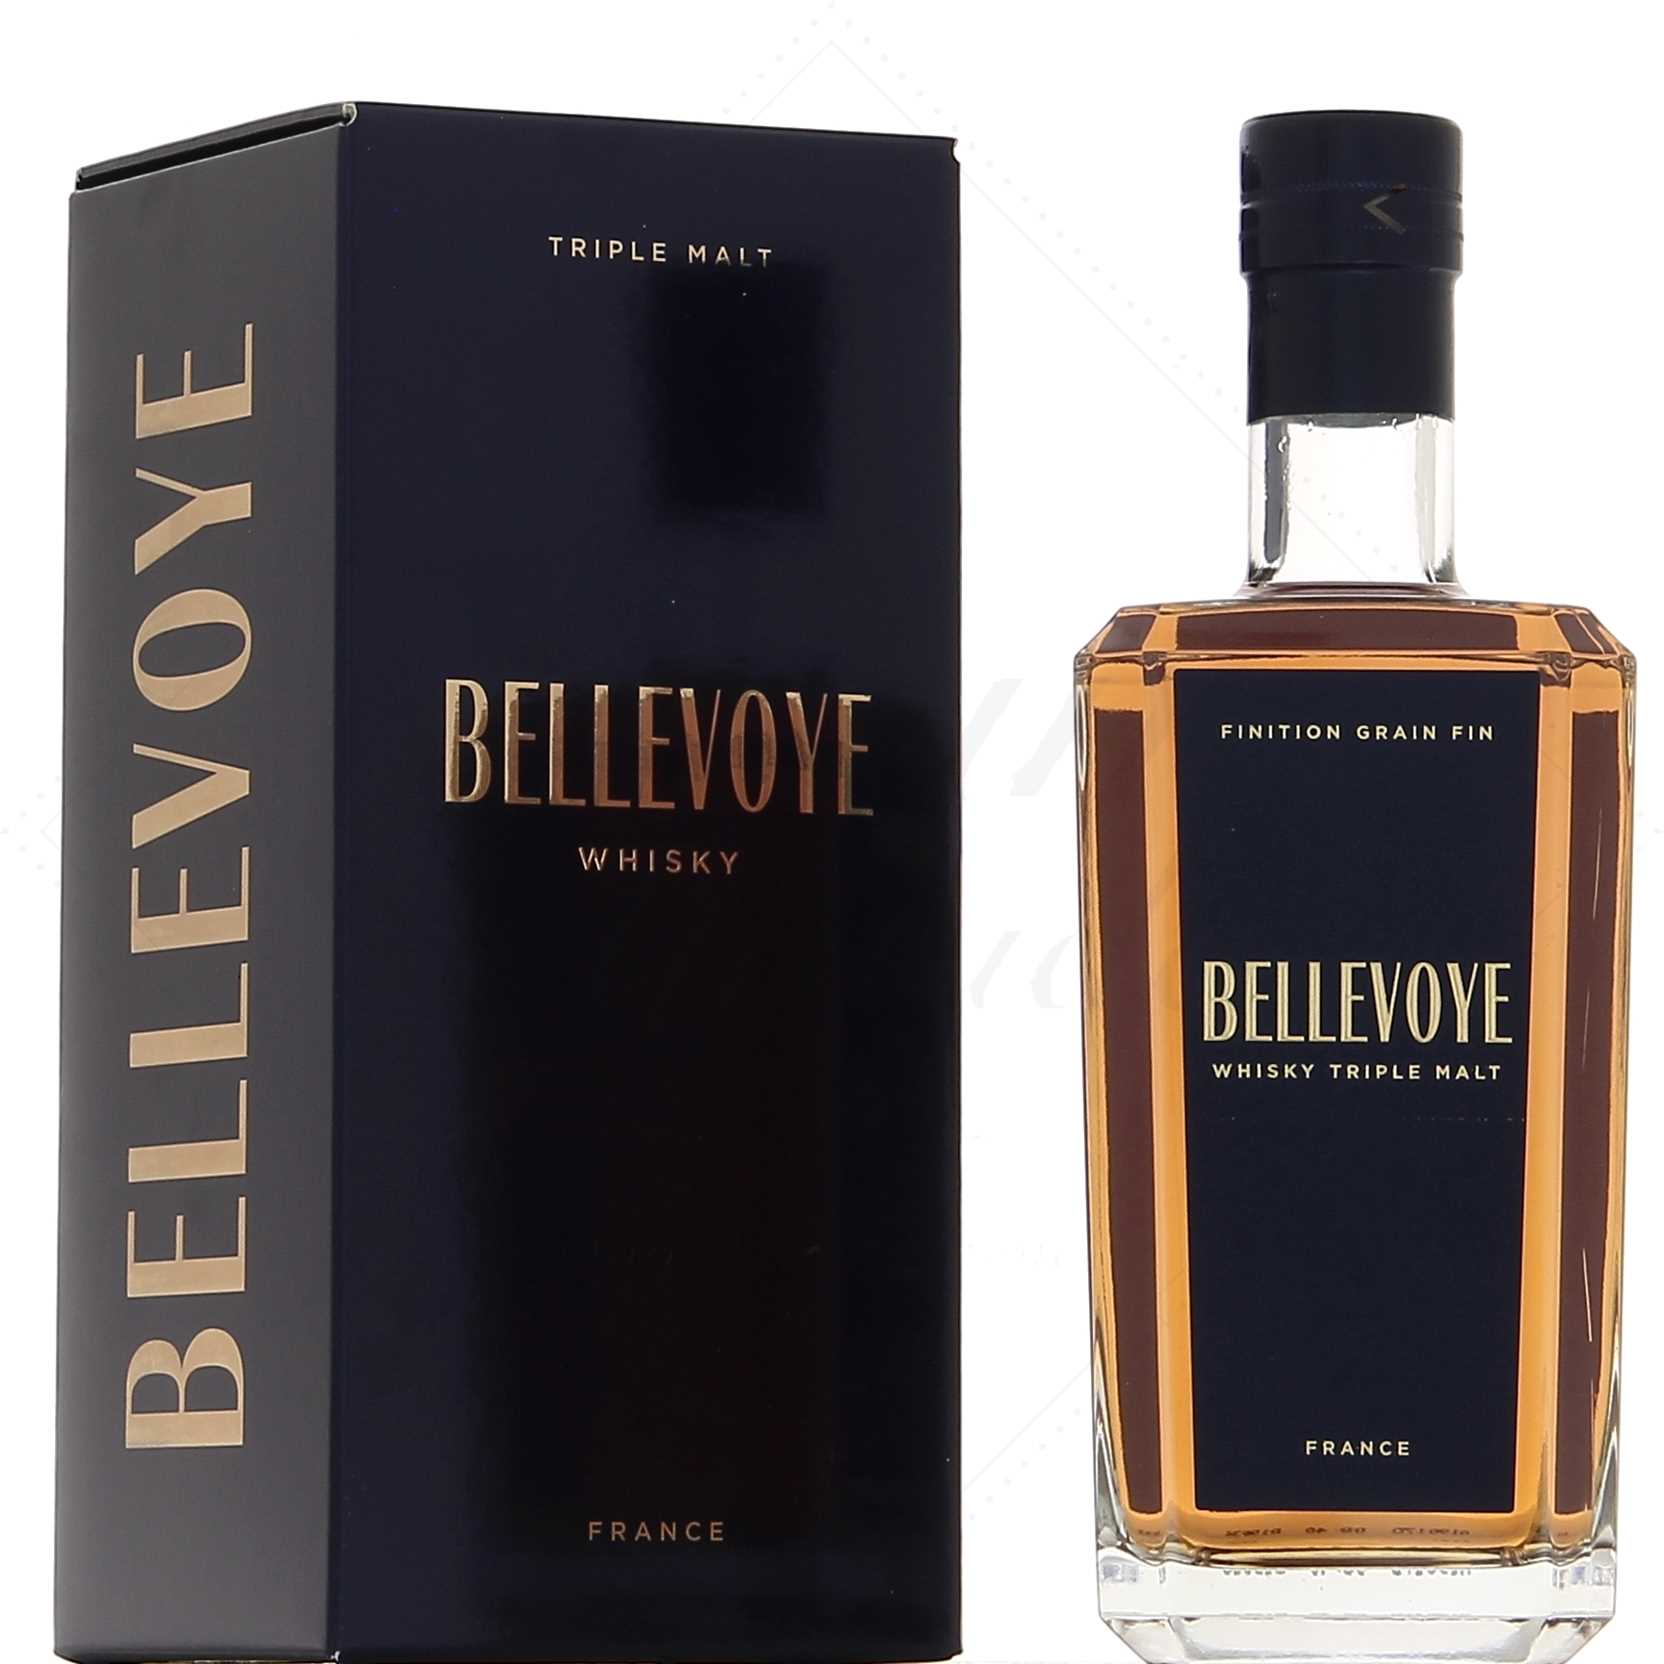 Whisky Bellevoye Blue - whisky francese blended